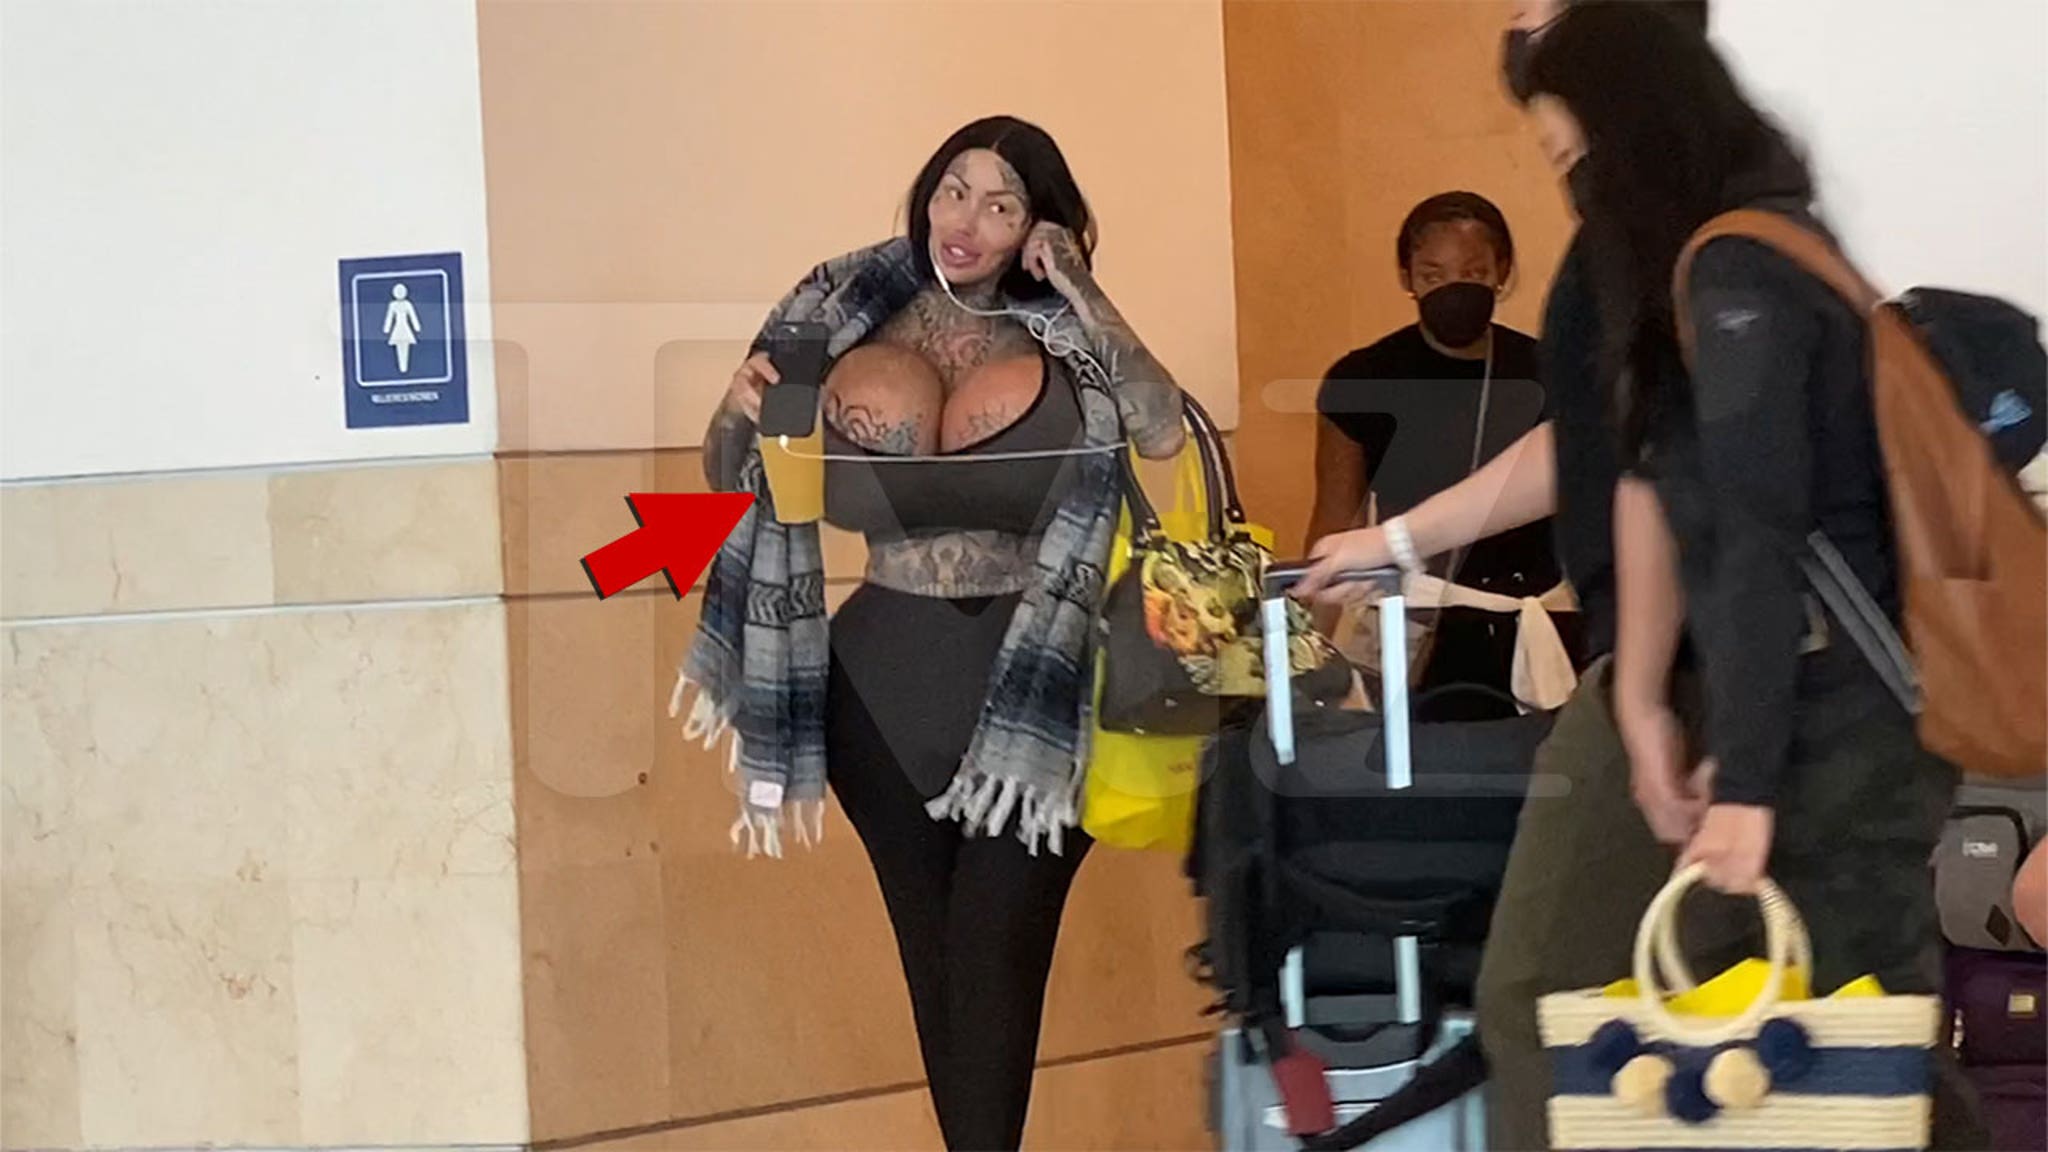 22 pound boobs